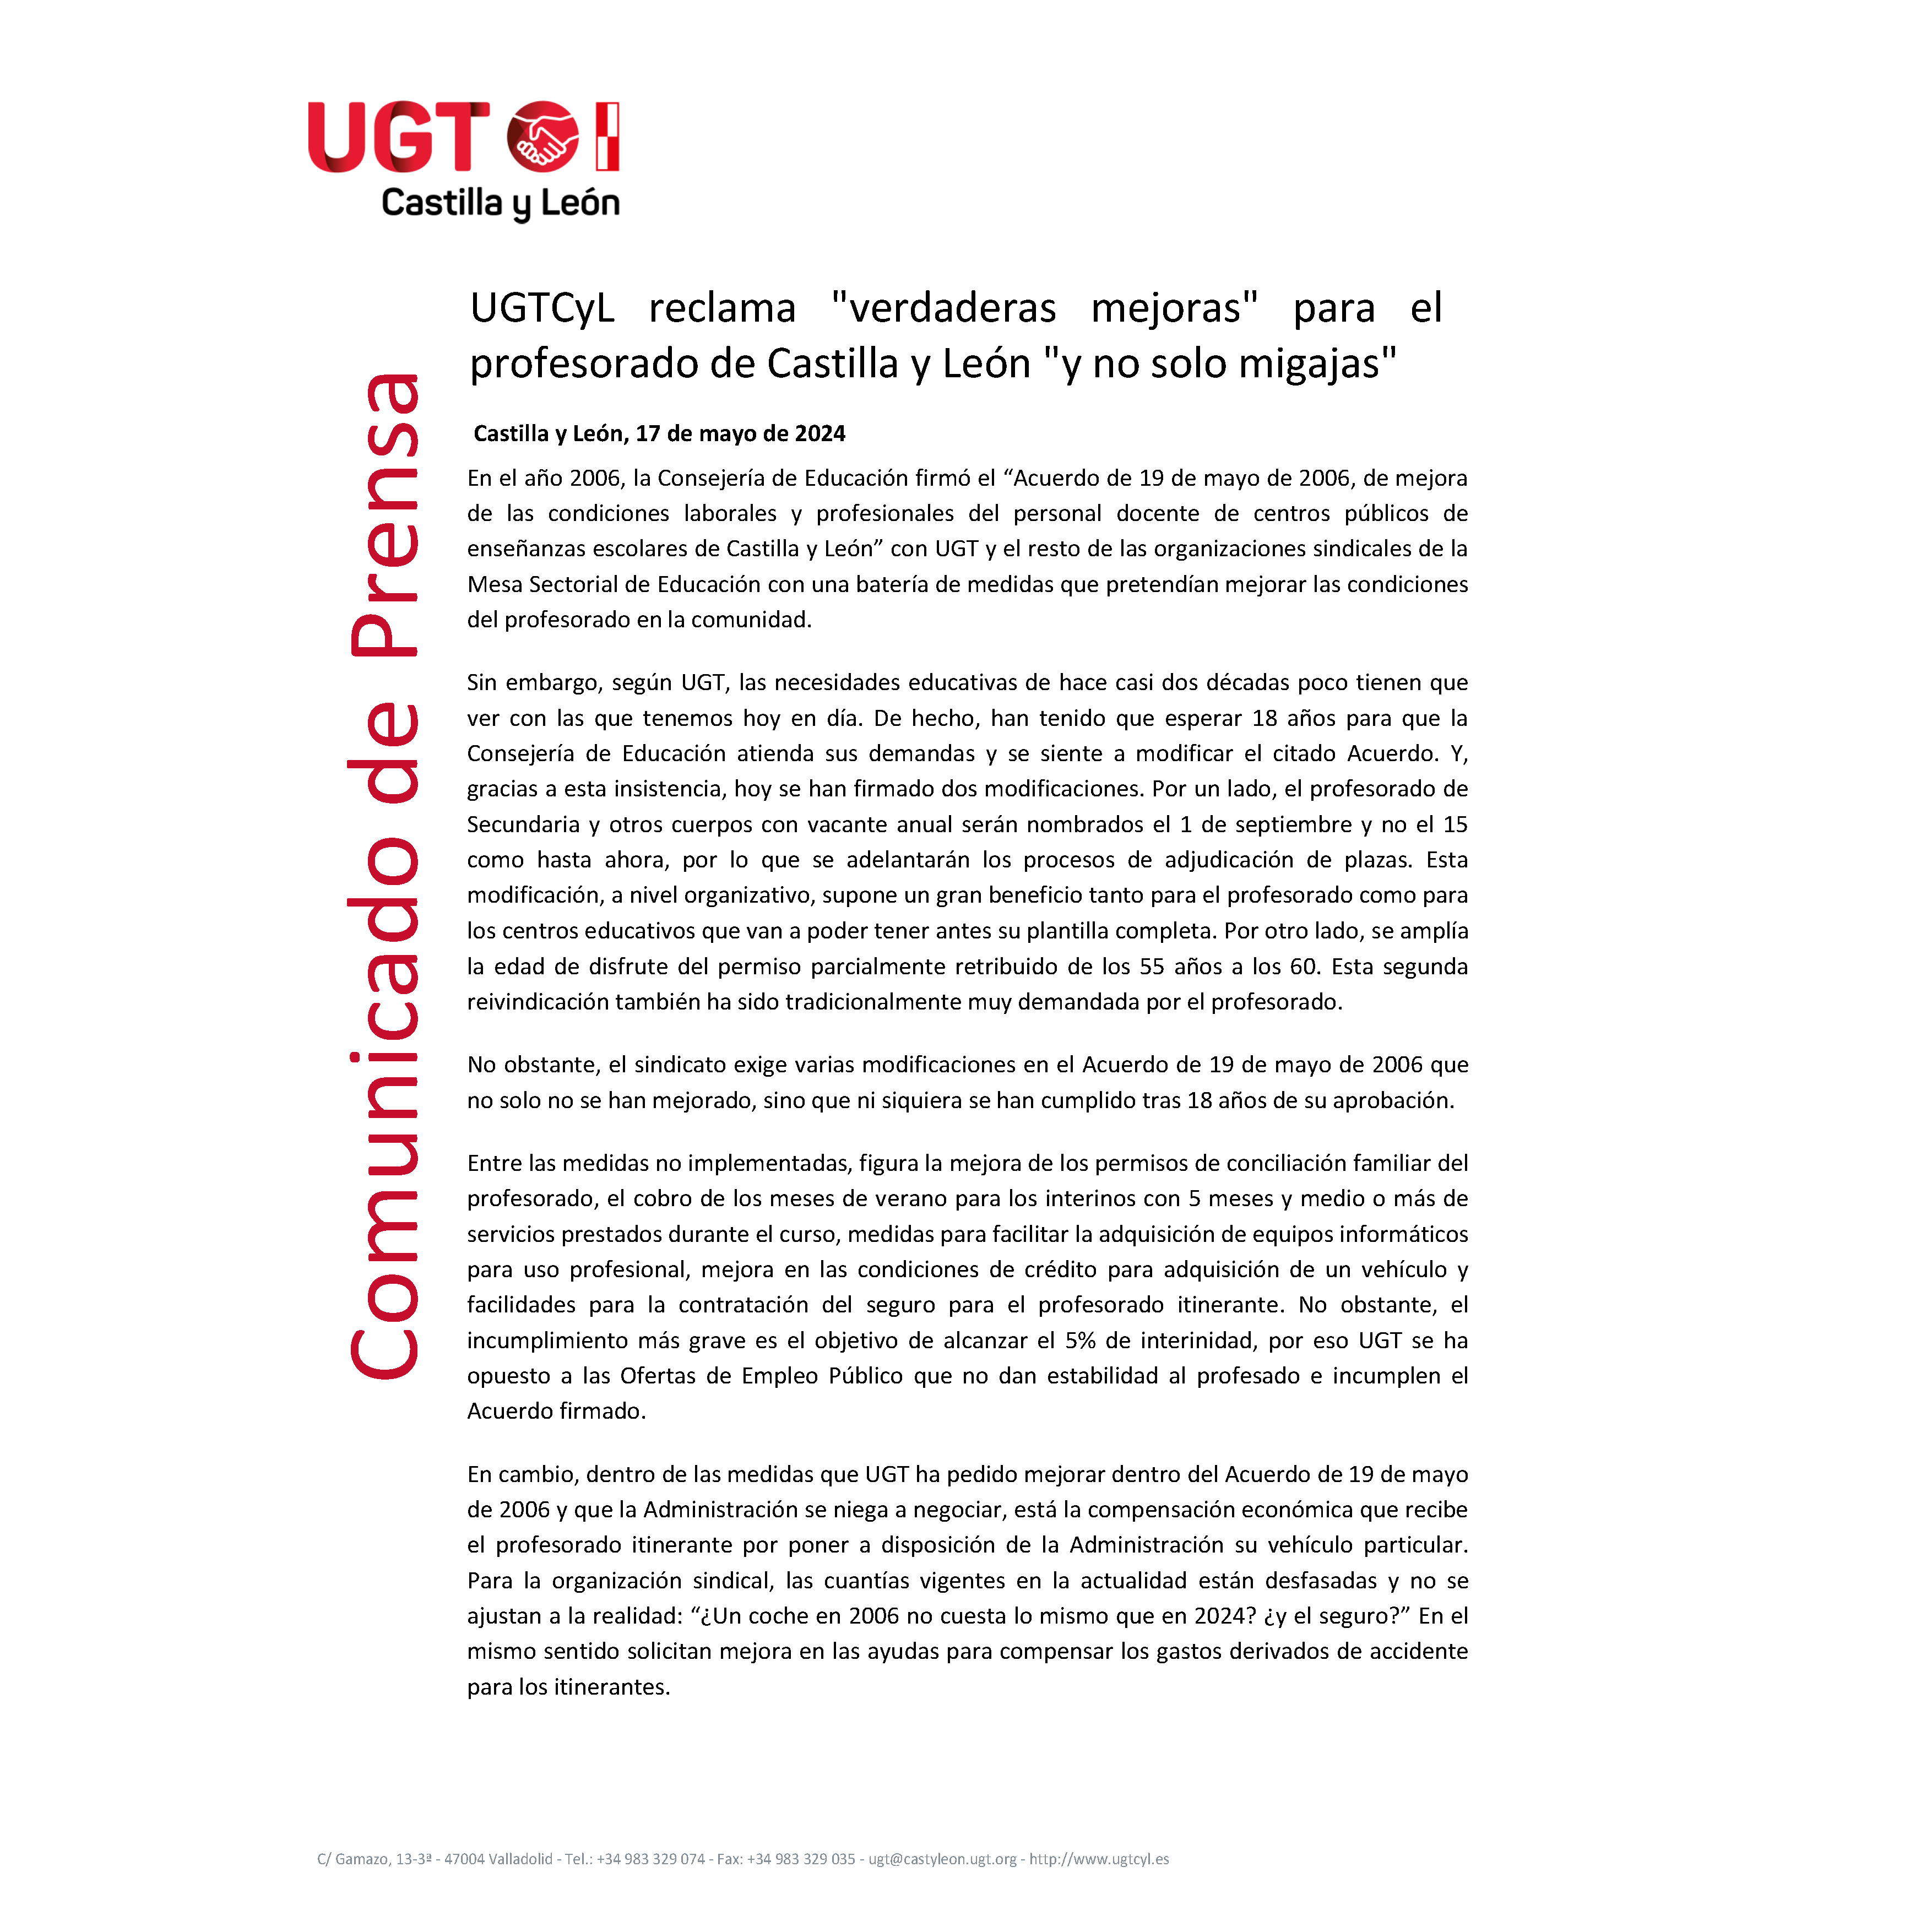 UGT CyL reclama “verdaderas mejoras” para el profesorado de Castilla y León y “no solo migajas”